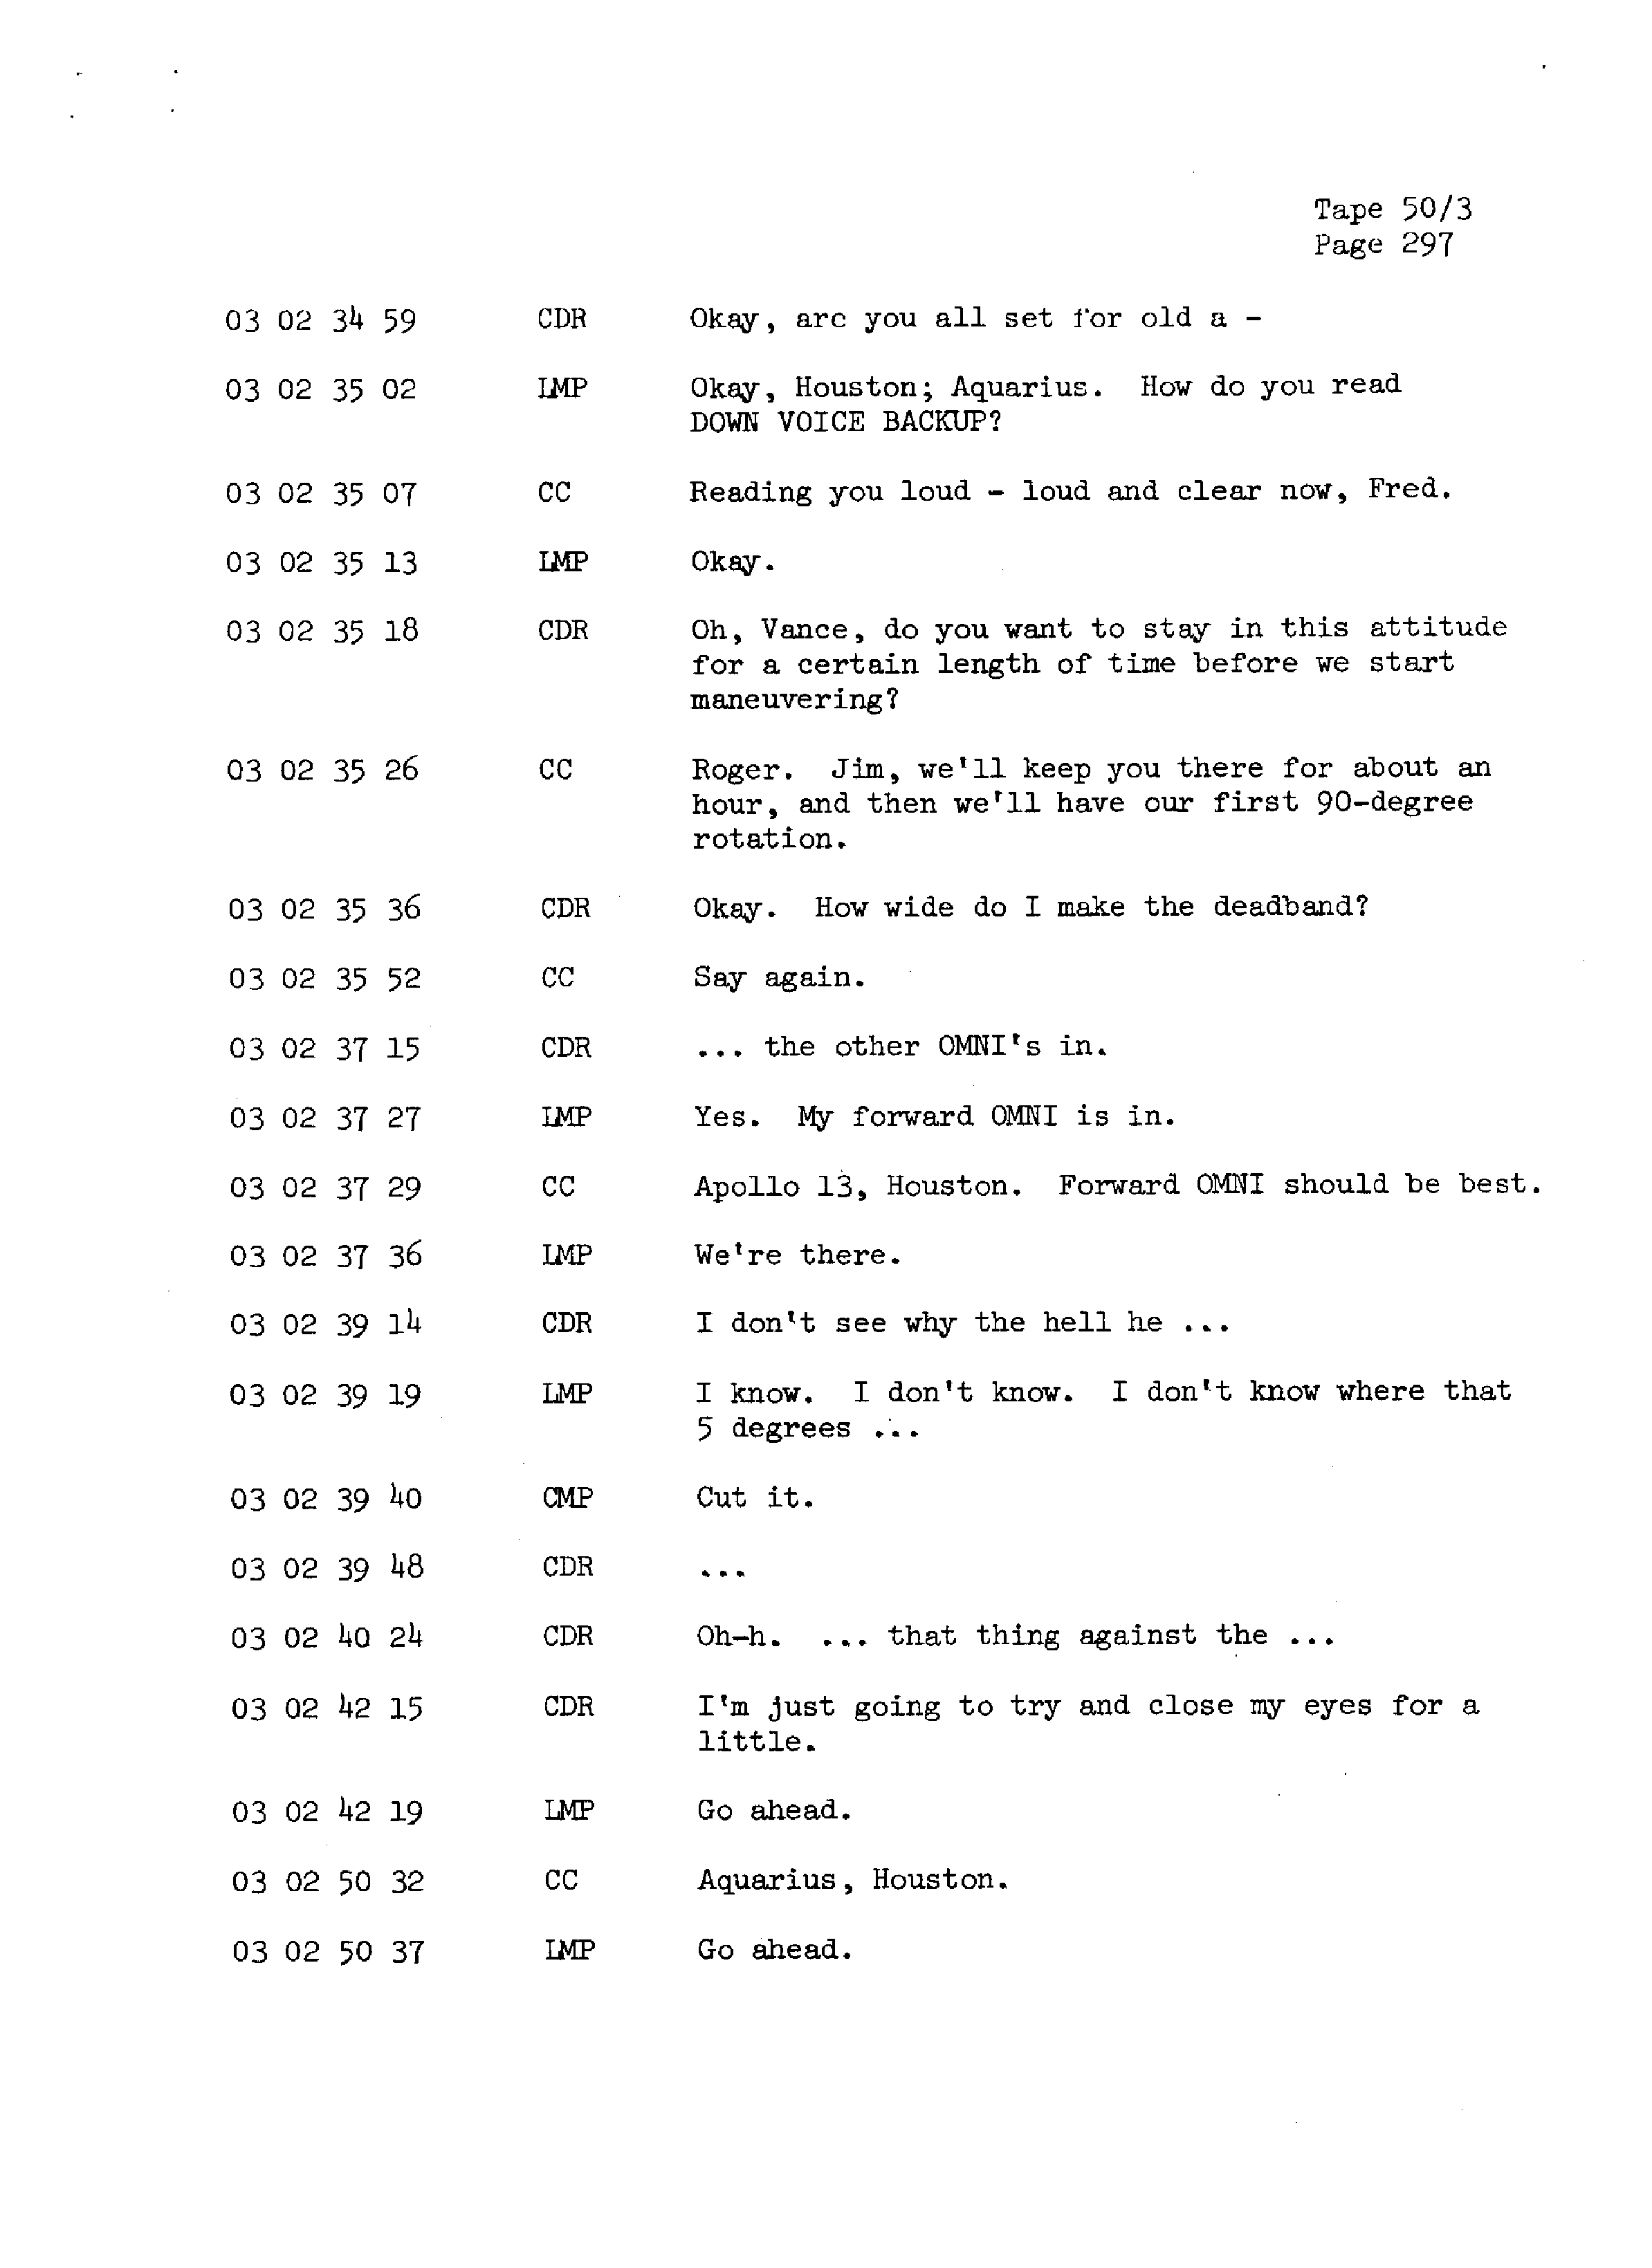 Page 304 of Apollo 13’s original transcript